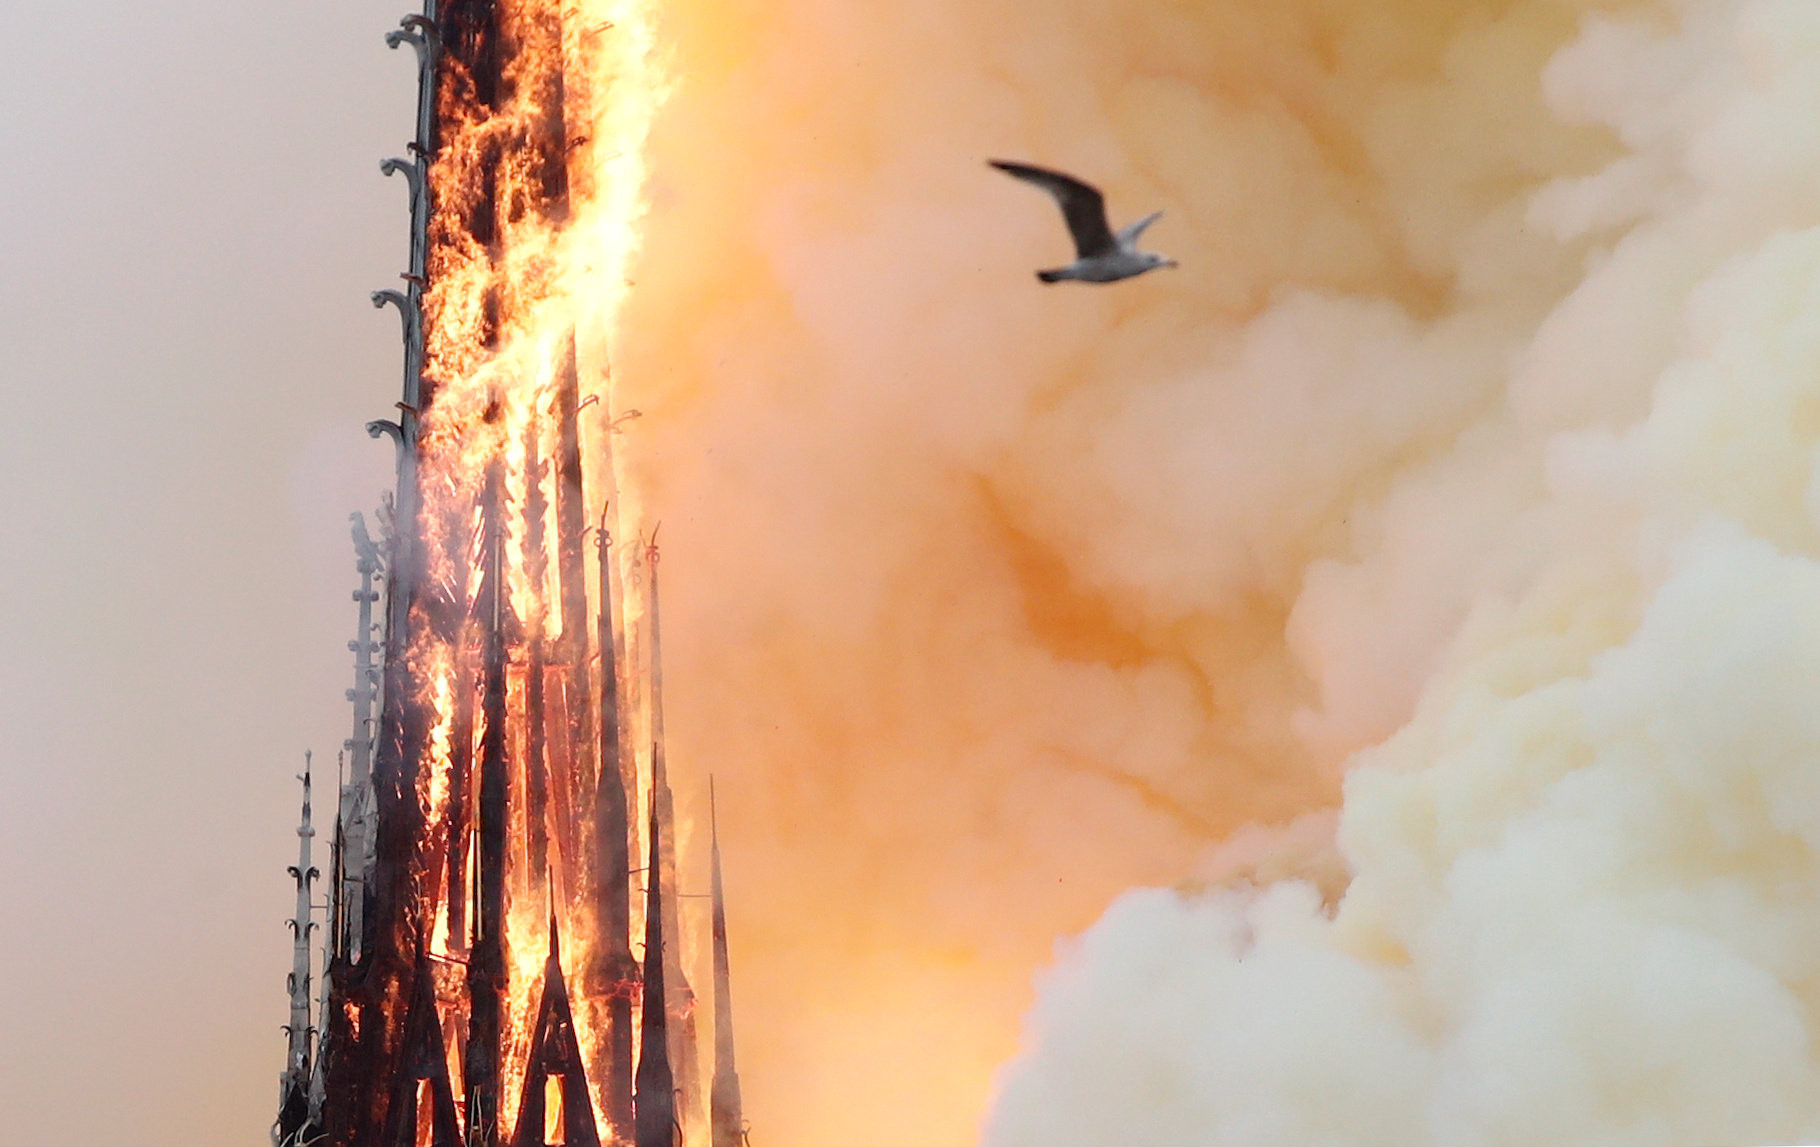 ▲巴黎聖母院（Notre-Dame de Paris）；巴黎聖母主教座堂（Cathédrale Notre-Dame de Paris）火災。（圖／路透社）